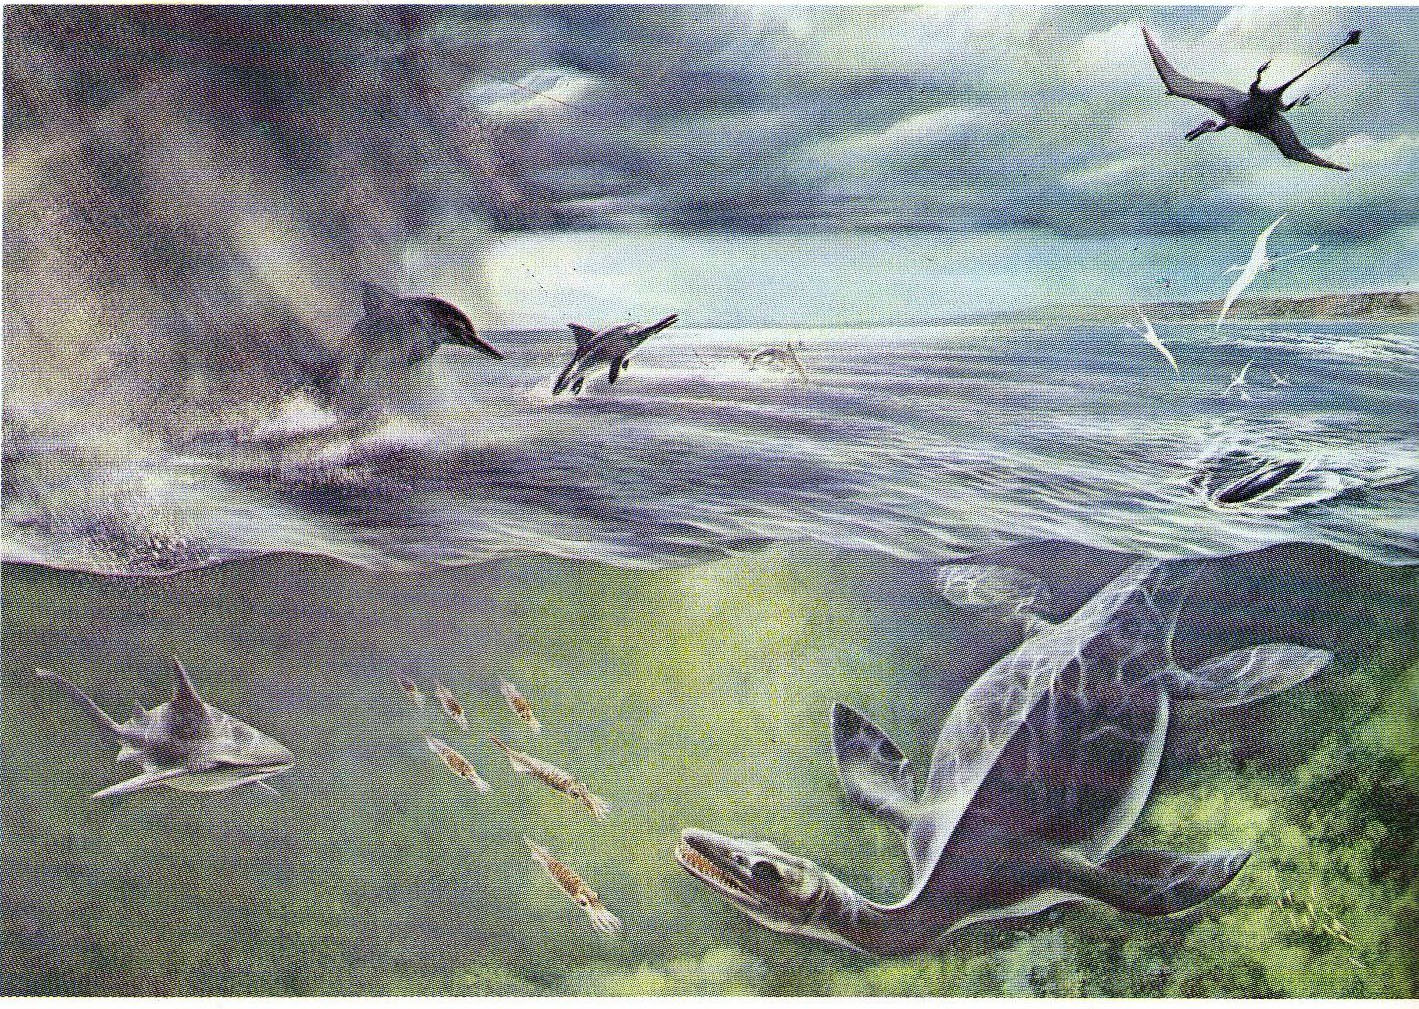 Первый древний океан. Юрский период мезозойской эры море. Морские динозавры Мезозойская Эра. Доисторический океан Тетис. Обитатели мезозойского океана Тетис.